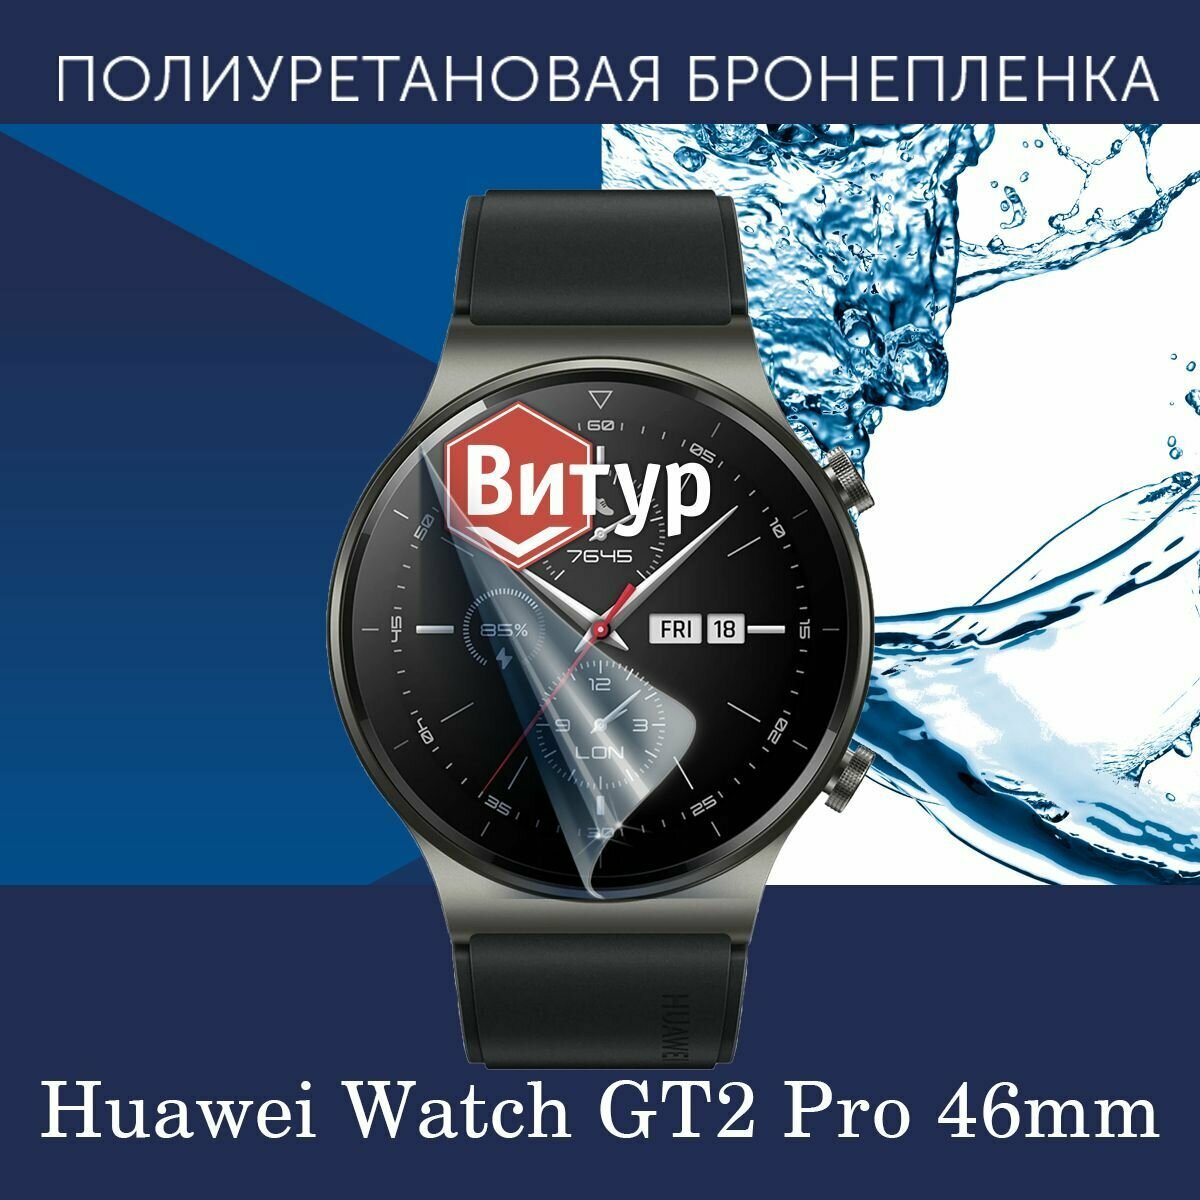 Полиуретановая бронепленка для смарт часов Huawei Watch GT2 Pro / Защитная пленка для Хуавей Вотч ГТ2 Про 46мм / Глянцевая